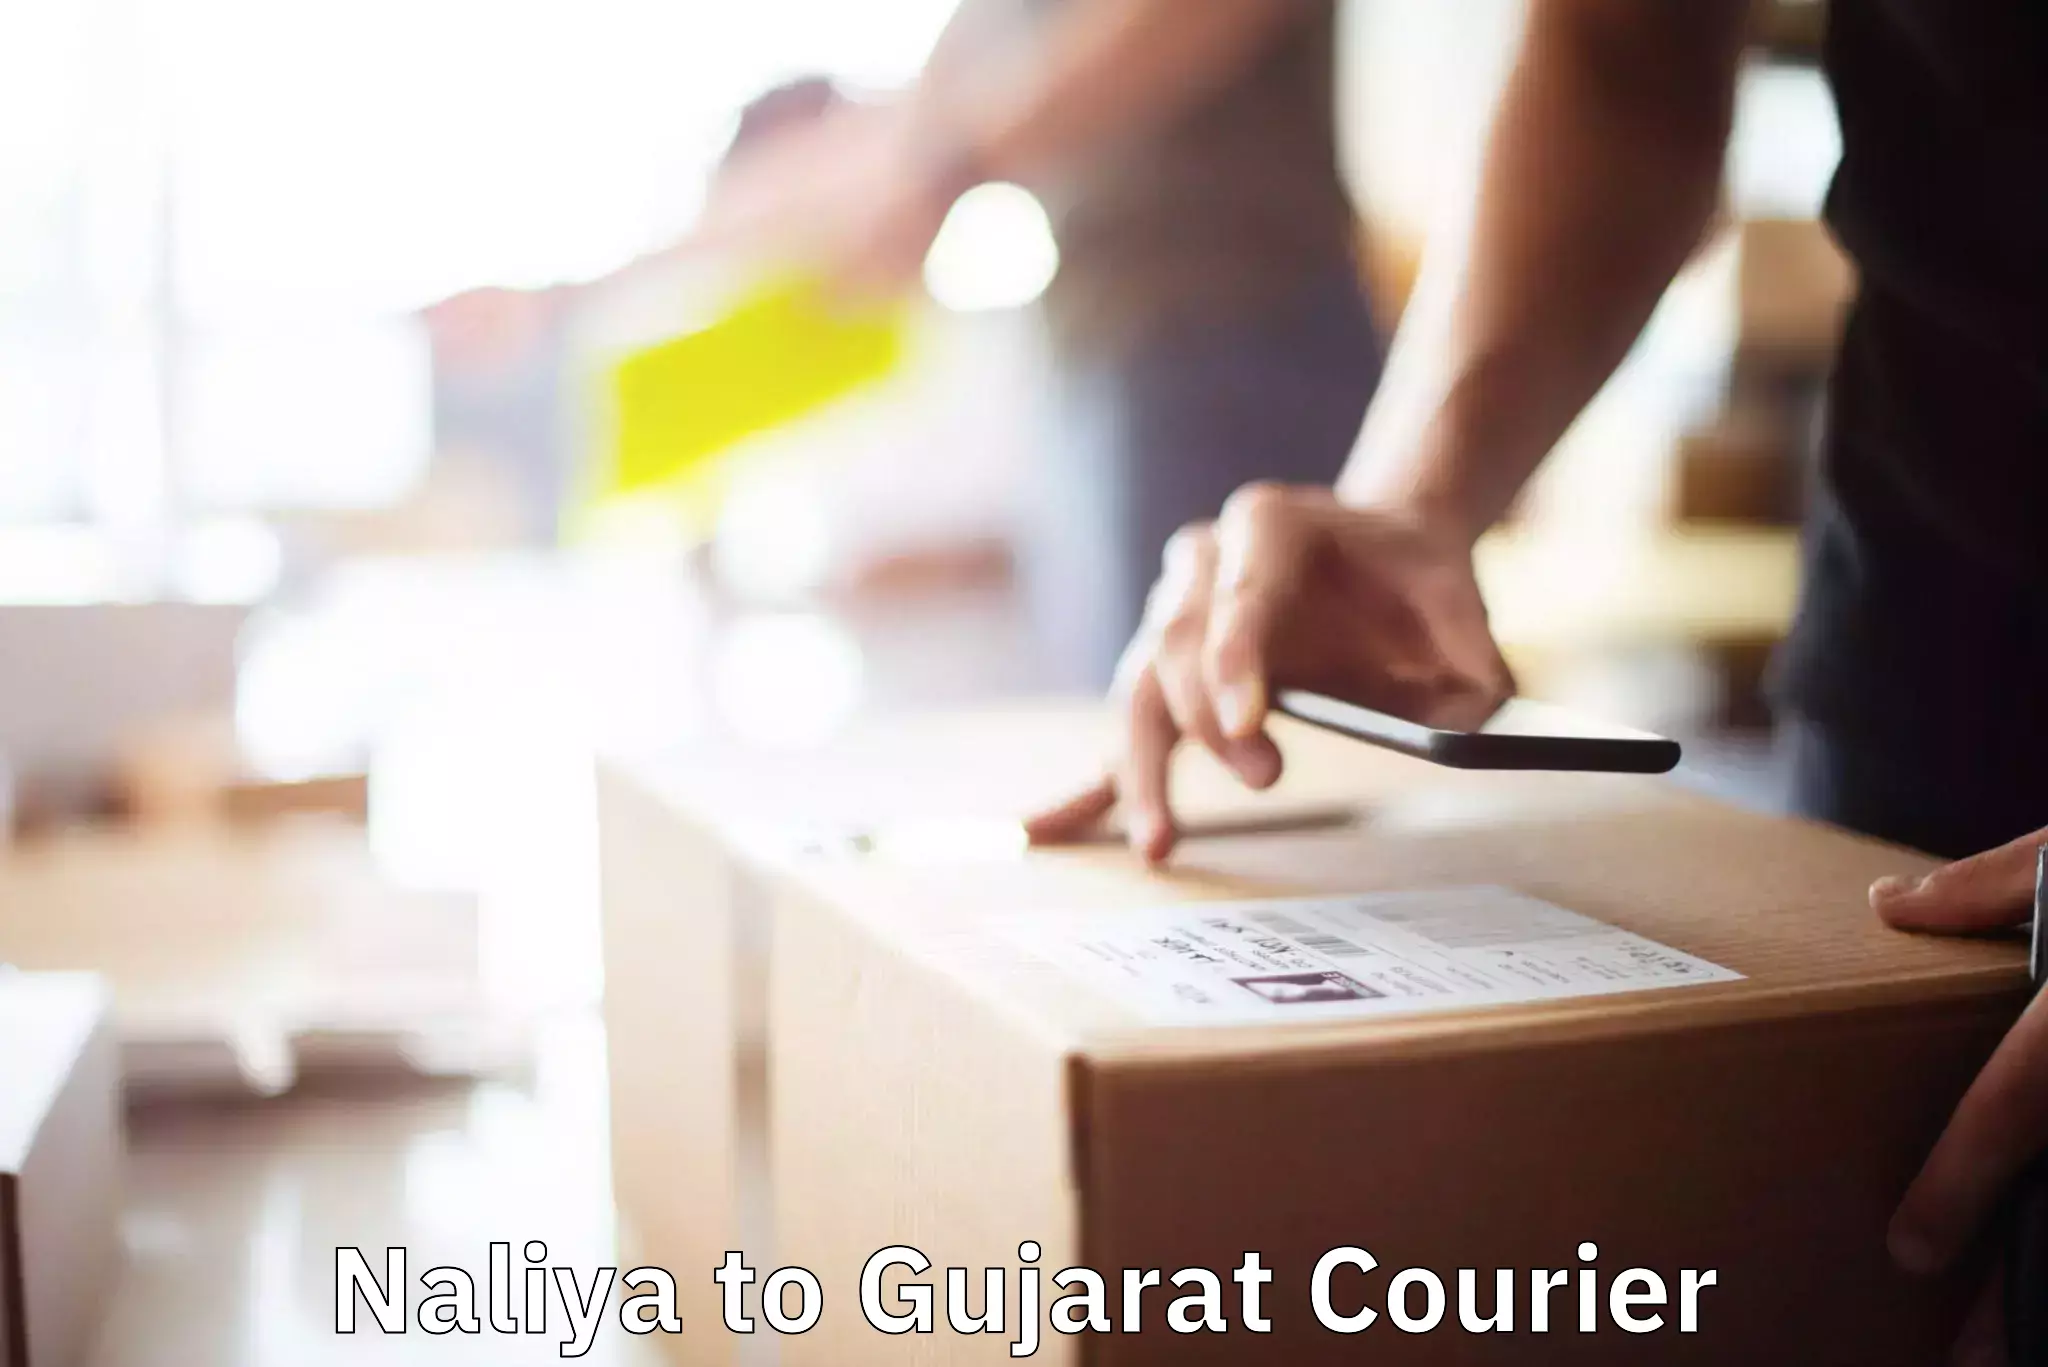 Furniture moving experts Naliya to Vyara